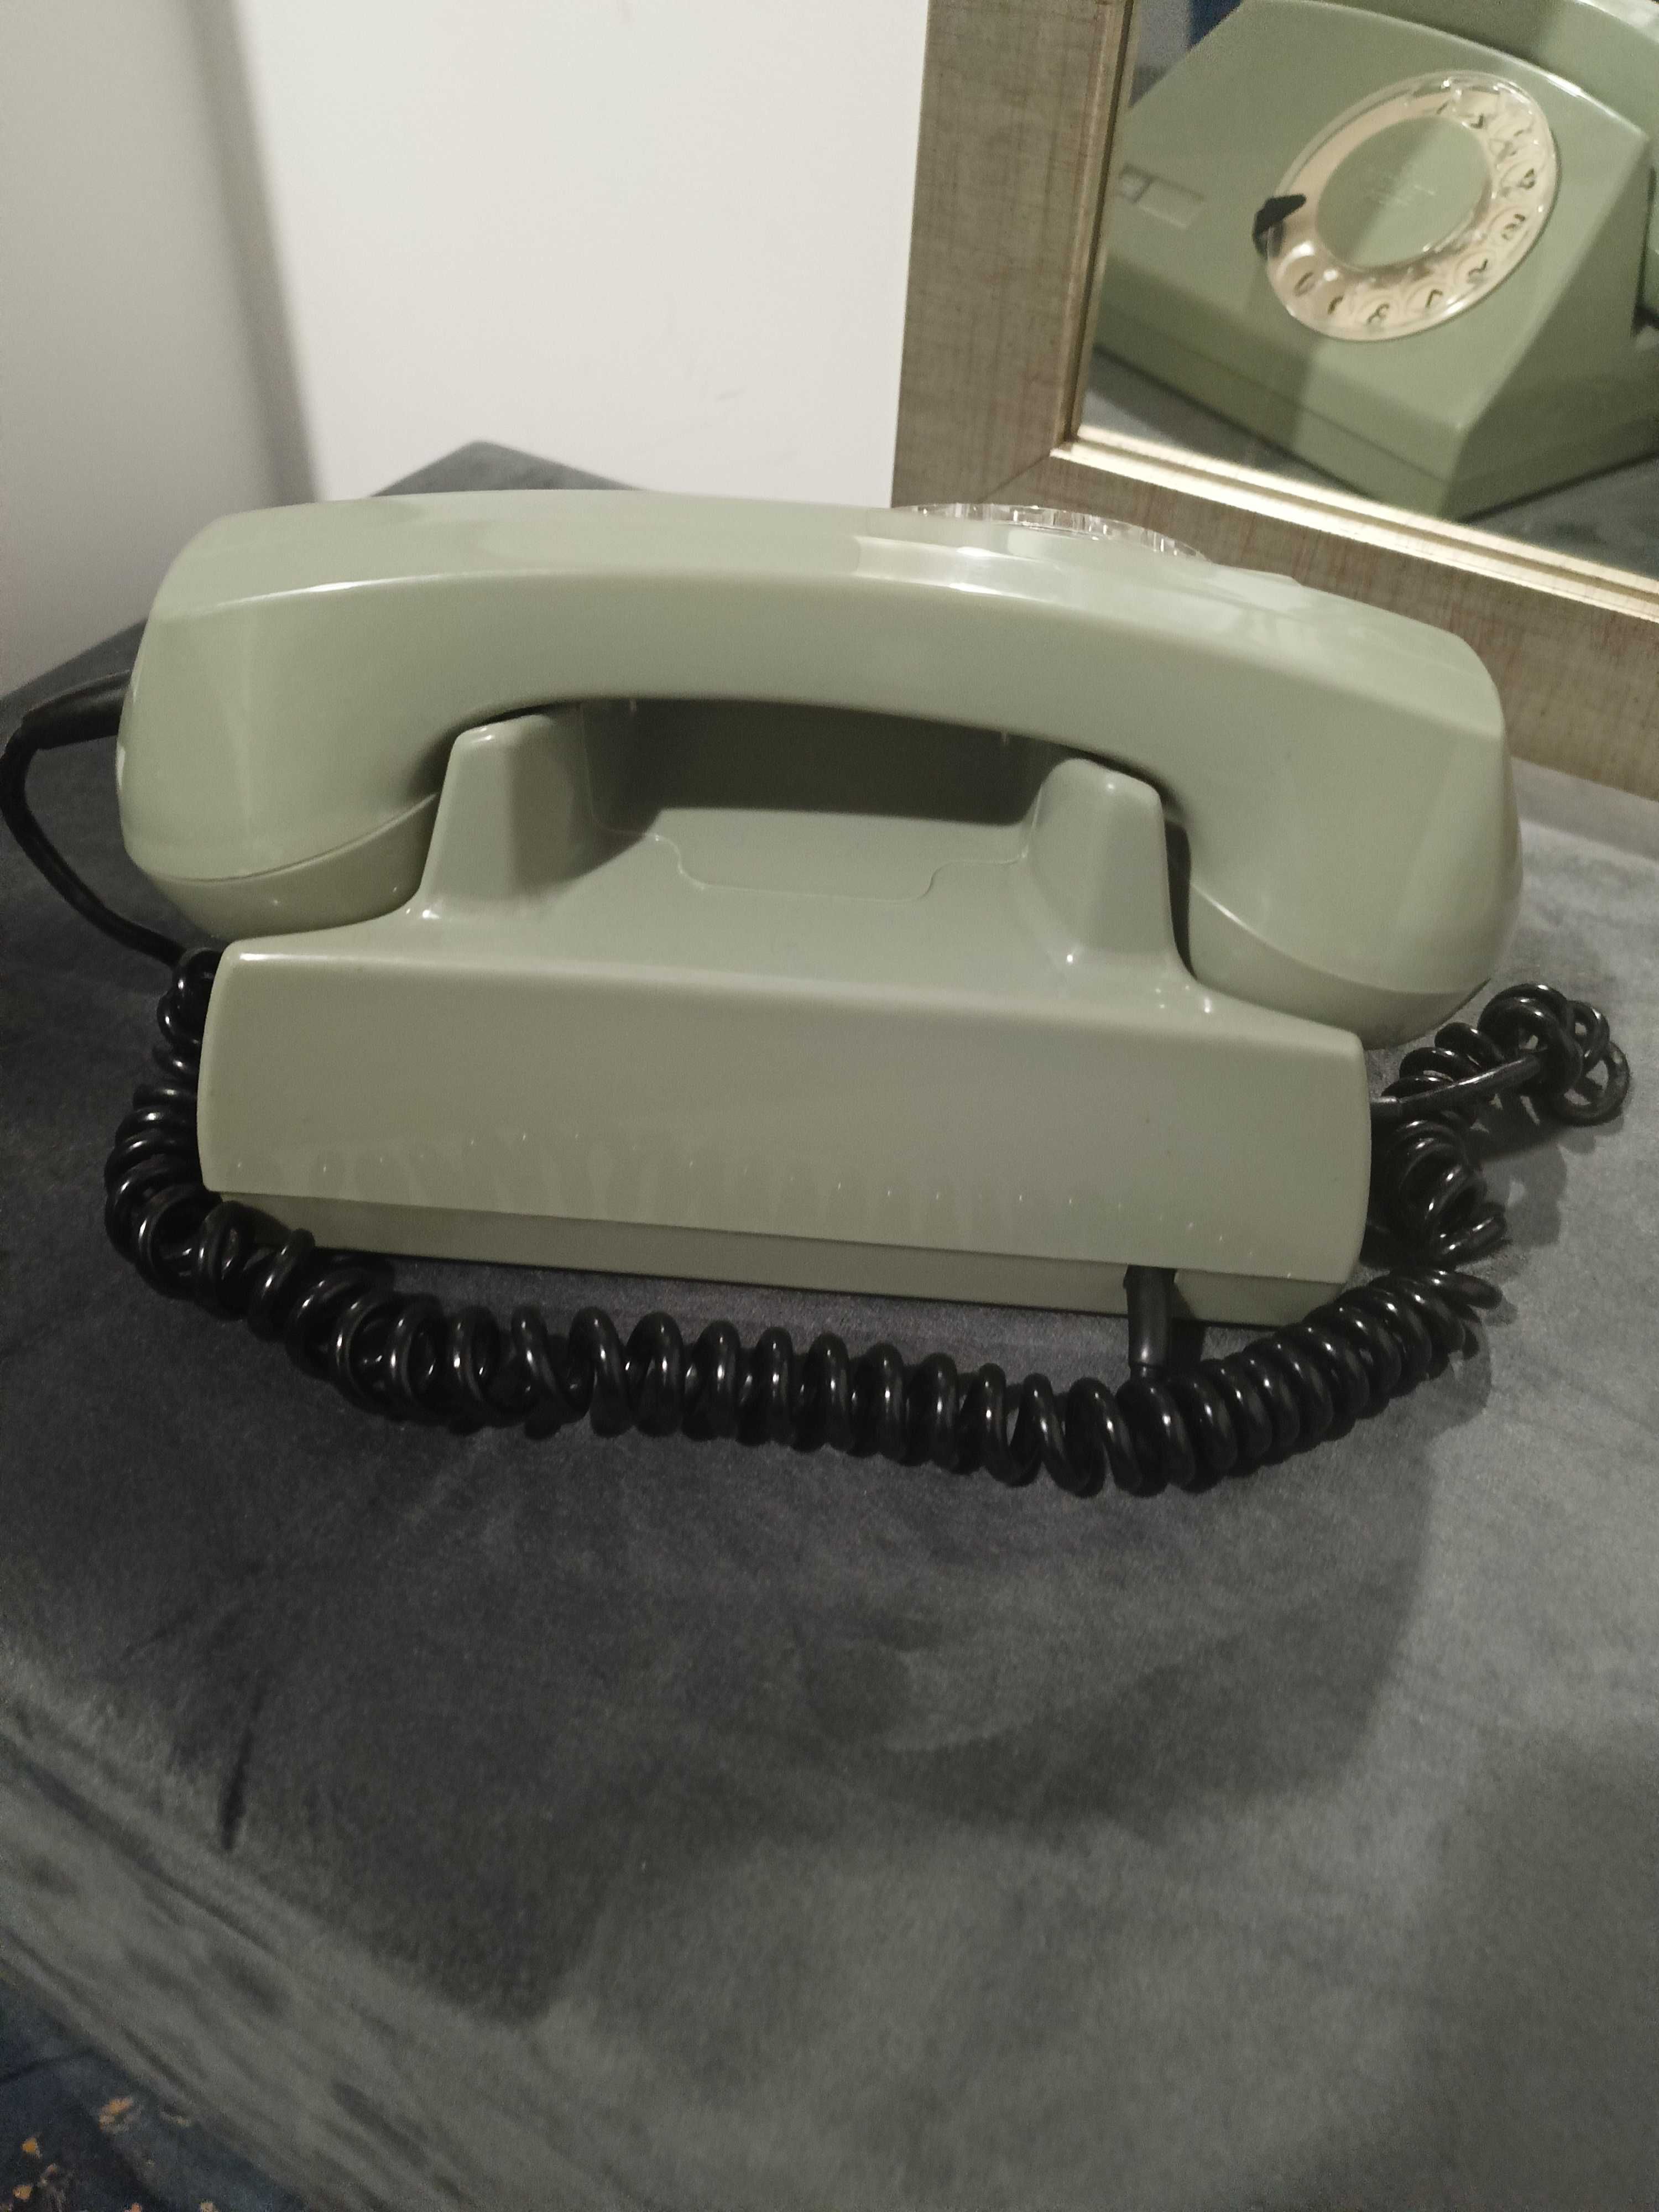 Telefon TELCOM model Aster